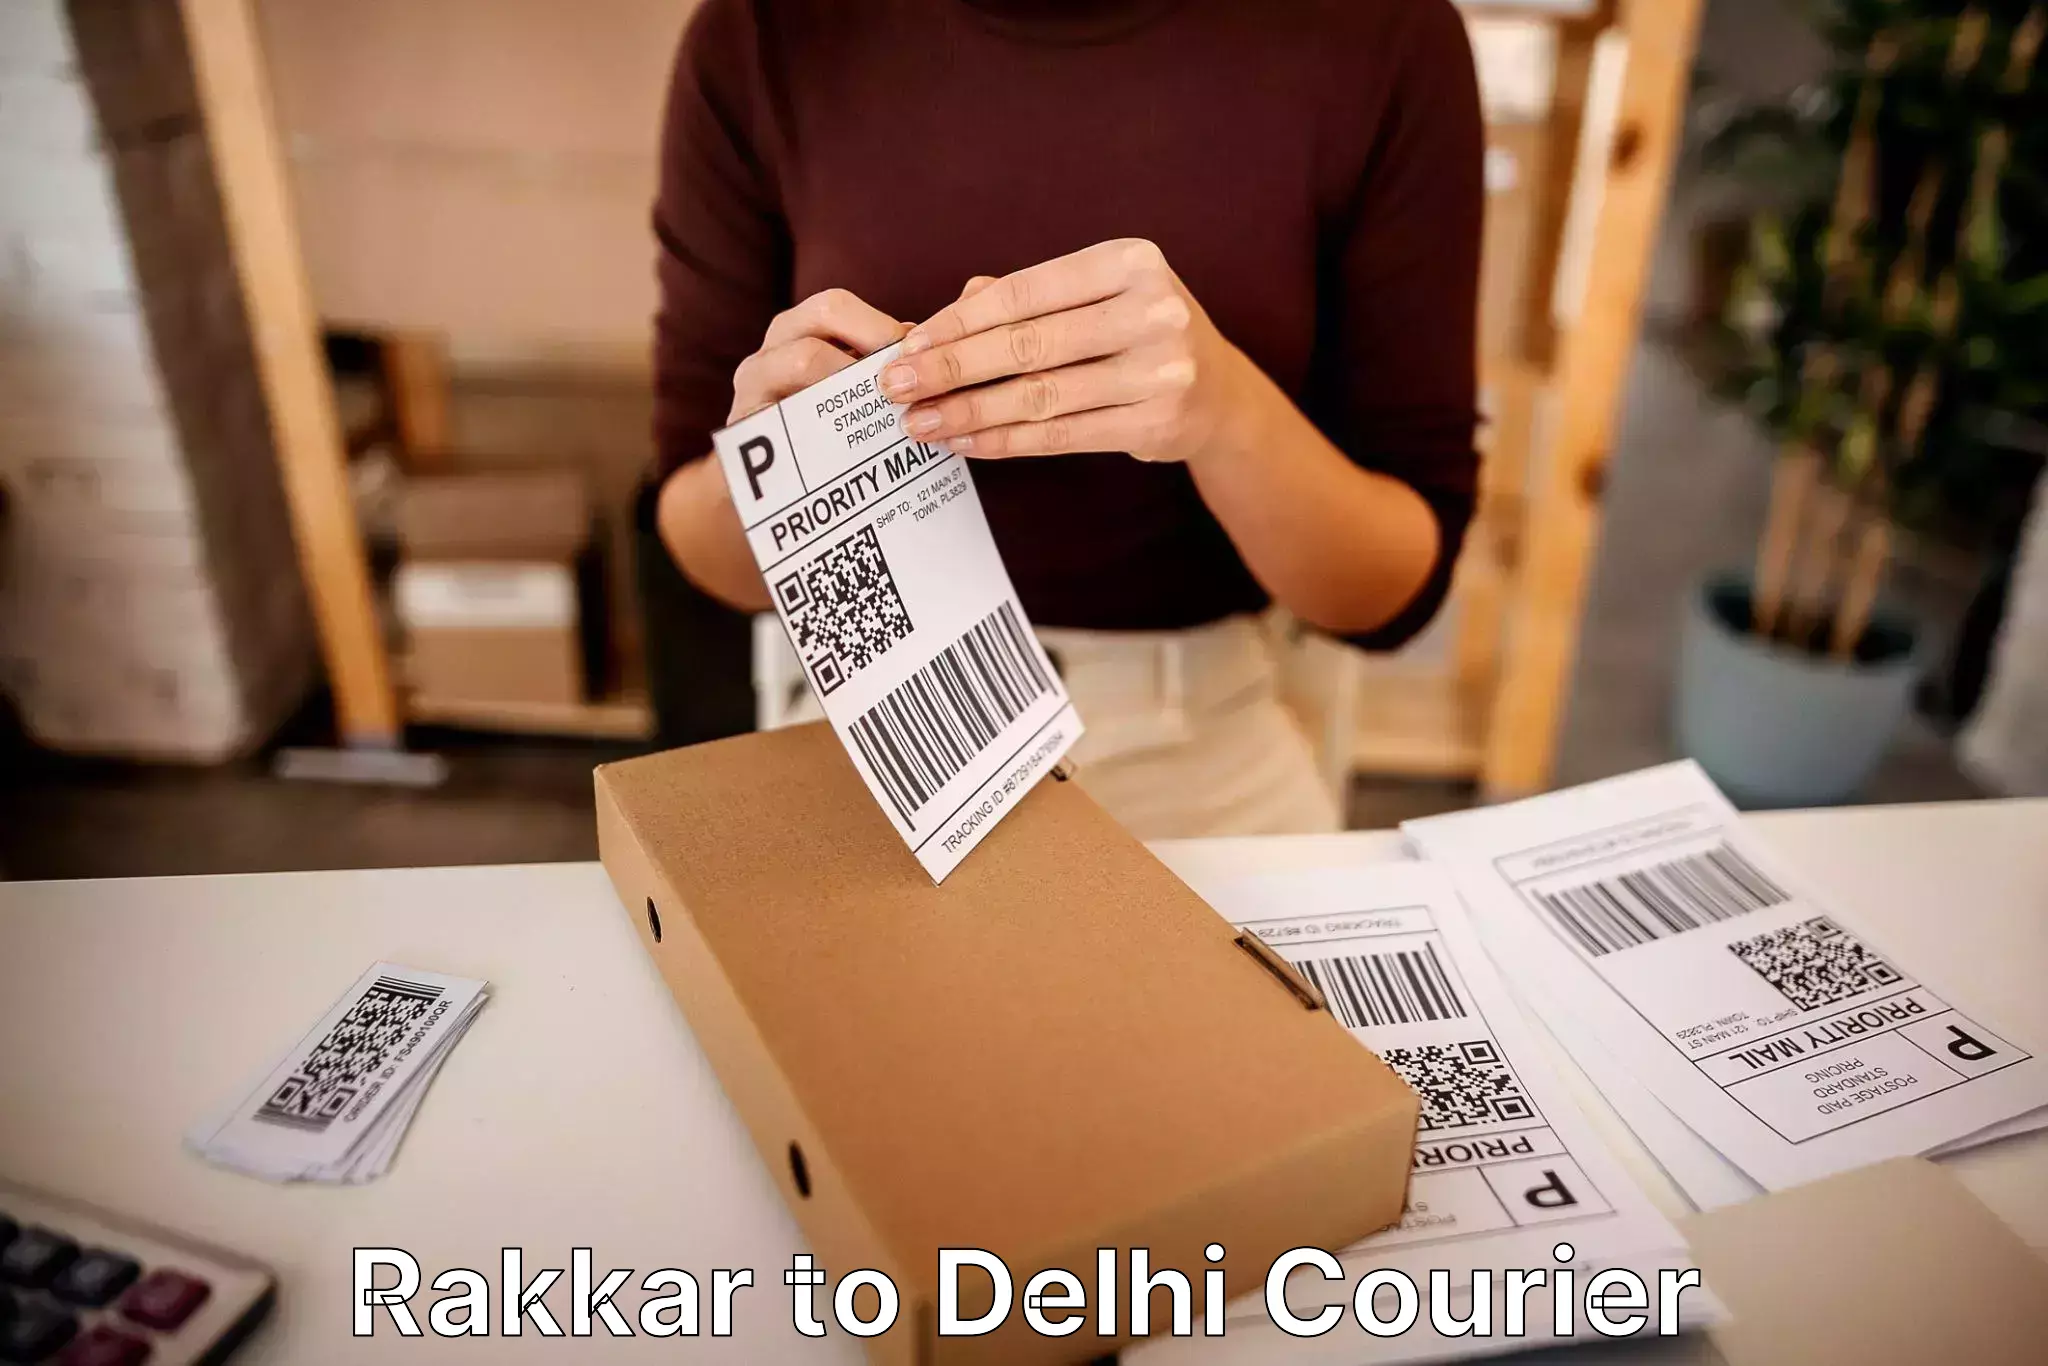 Furniture transport professionals Rakkar to East Delhi